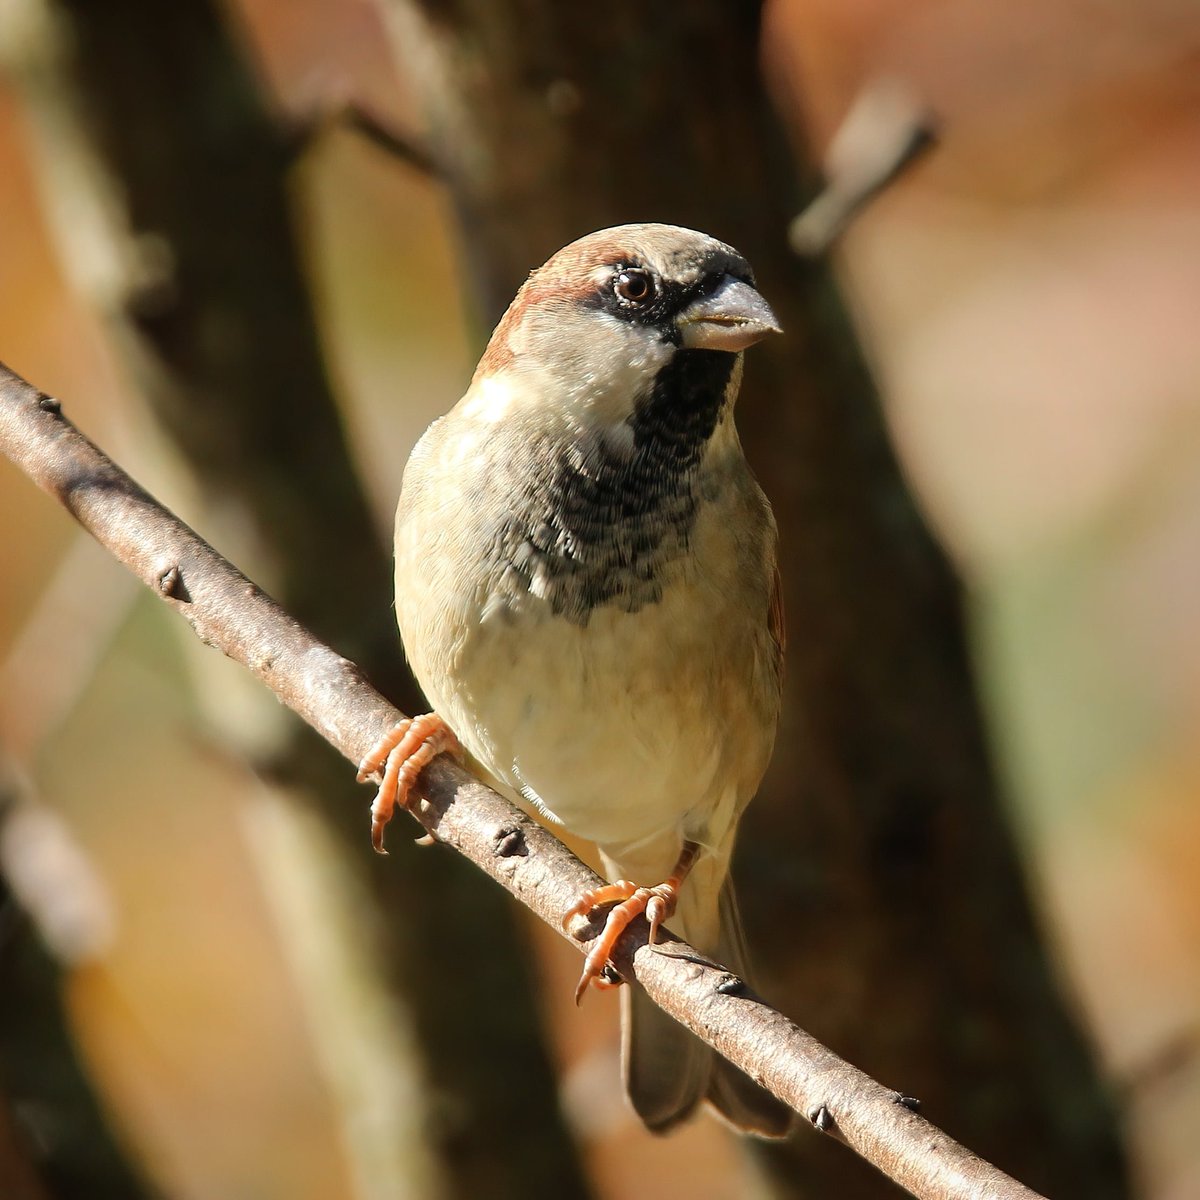 Happy Friday! #happyfridayeveryone #sparrows #housesparrows #sparrow #birdworld #ohiobirdworld #ohiobirdlovers #birdwatching #birdwatchers_daily #HappyFriday #birdwatchersdaily #itsfriday #birdwatchohio #ohiobirds #birdlove